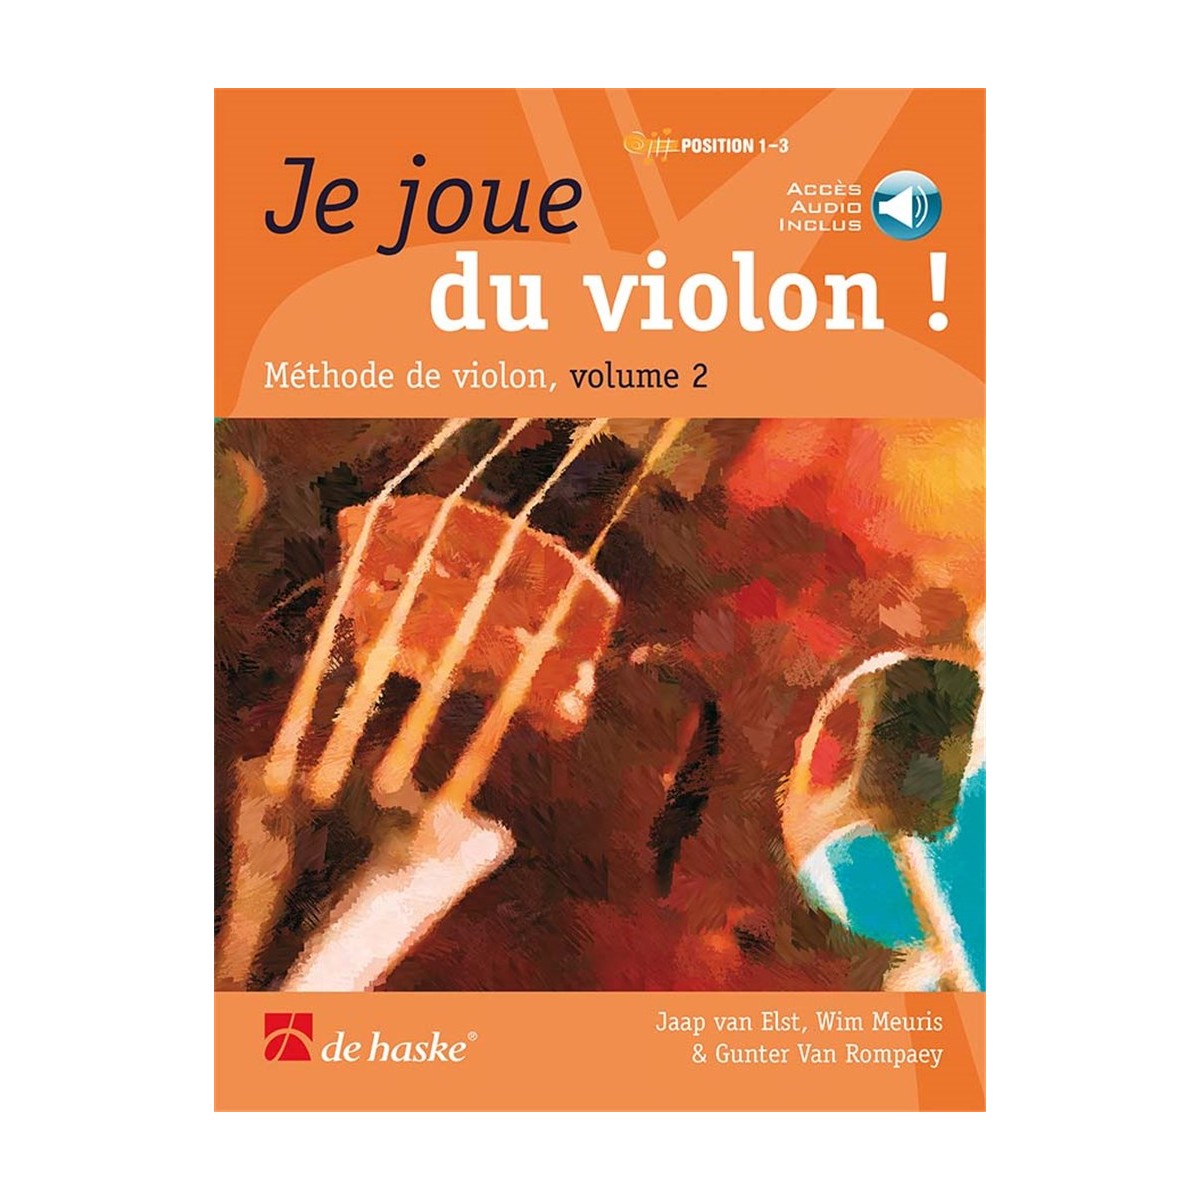 Je Joue du Violon ! Volume 2 Accès Audio